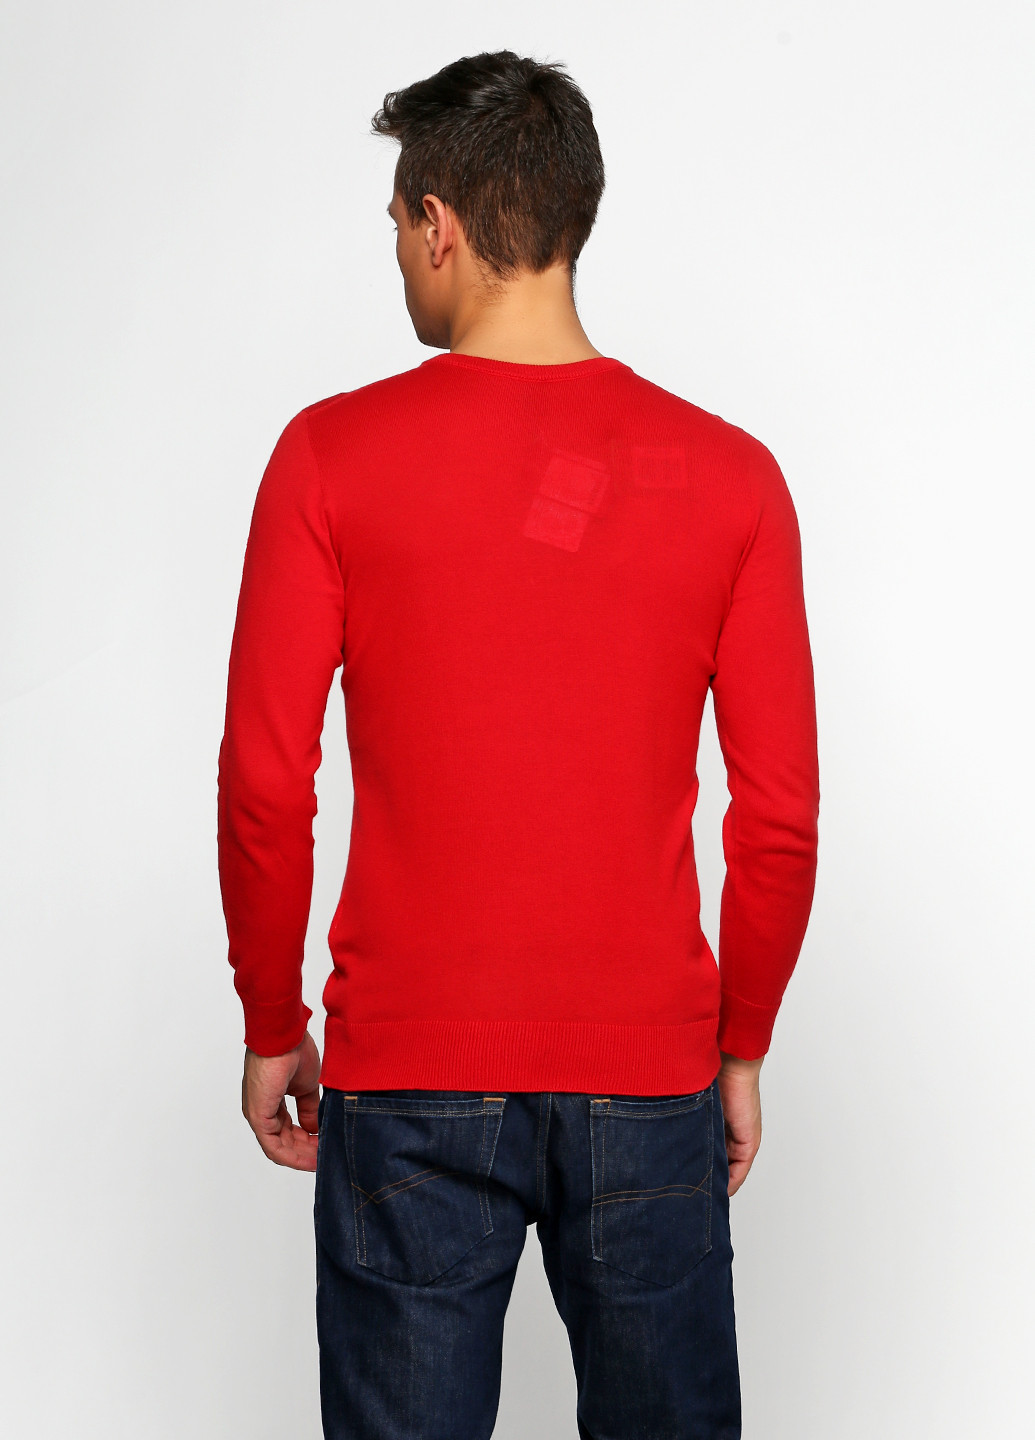 Красный демисезонный пуловер пуловер Van Cliff